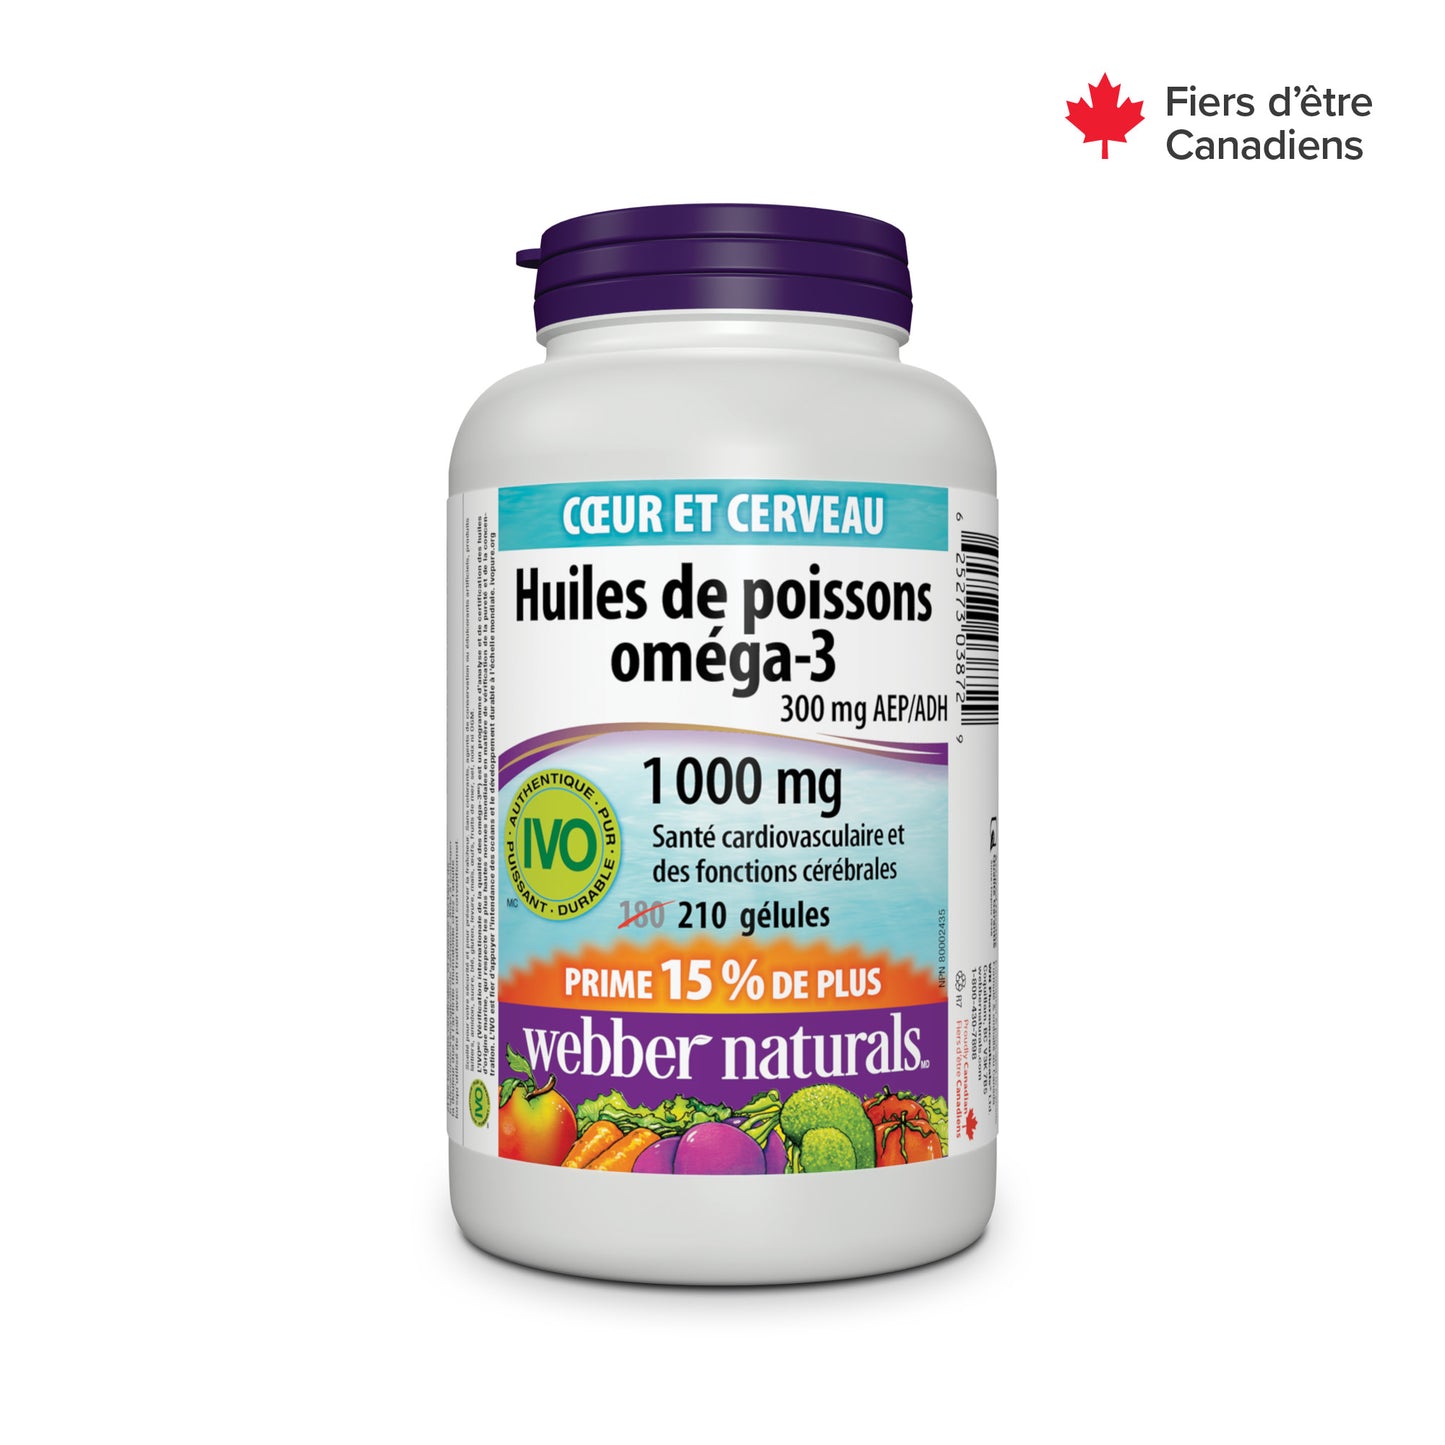 Omega-3 Fish Oils 300 mg EPA/DHA 1000 mg for Webber Naturals|v|hi-res|WN3872